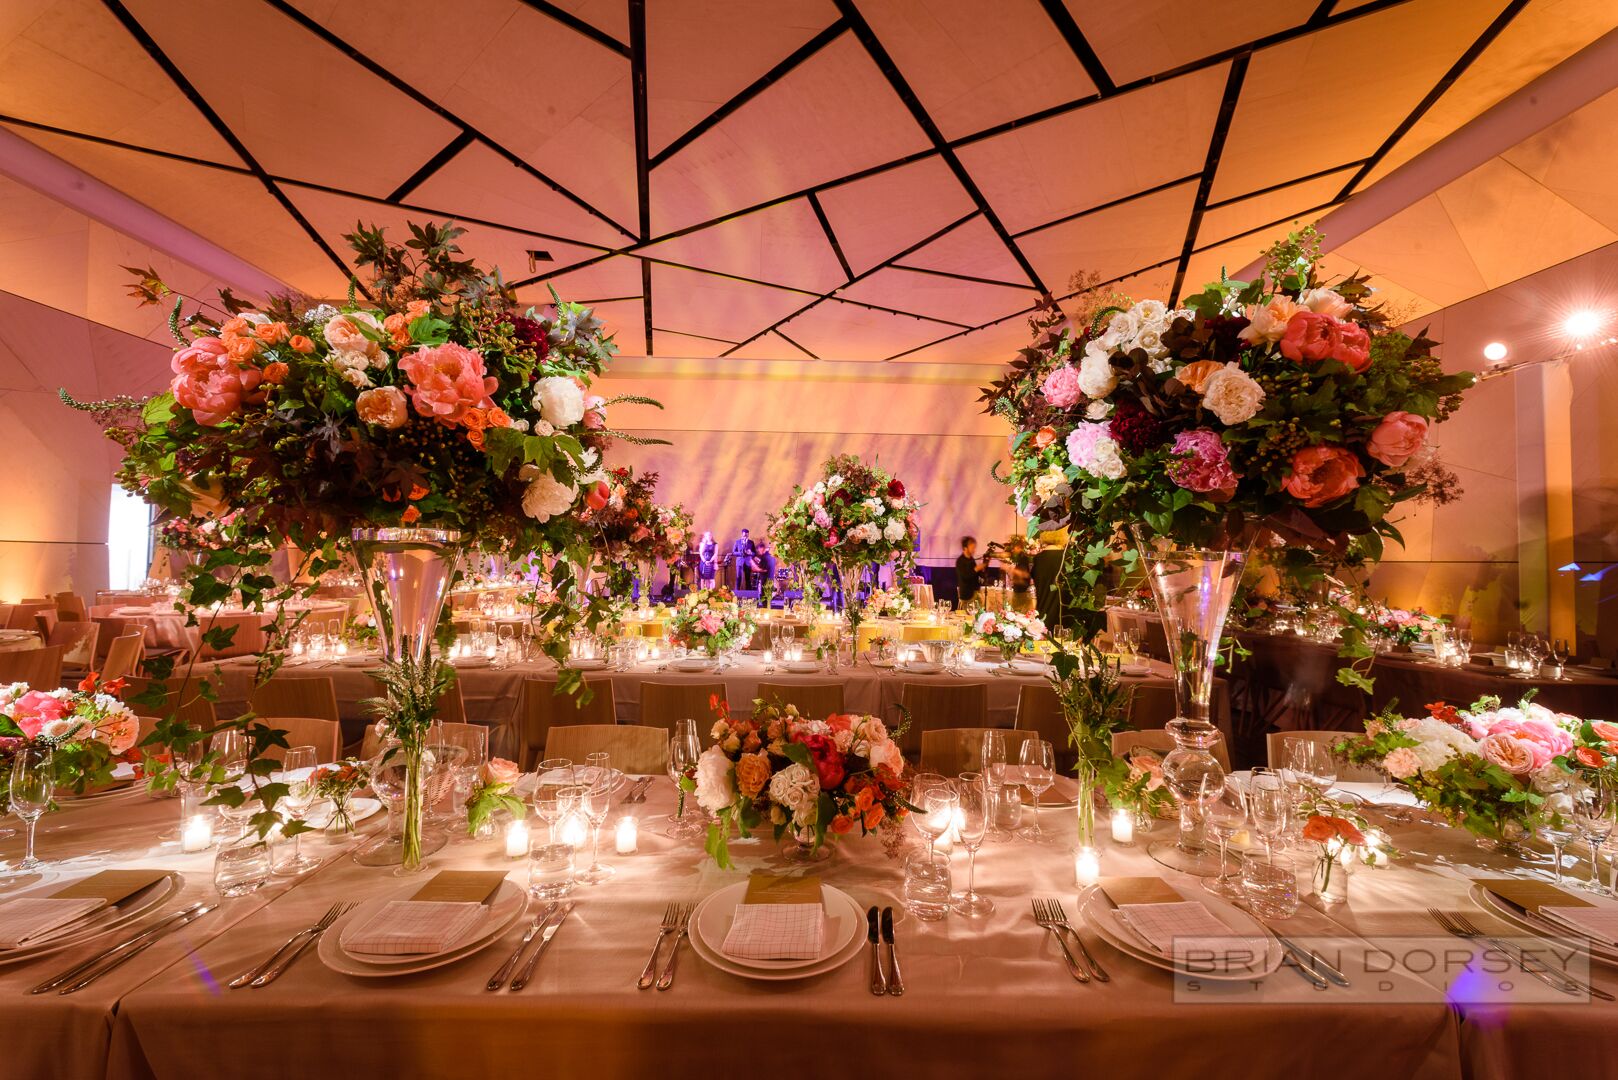 The William Vale Wedding Venue in New York ❤️ Portfolio